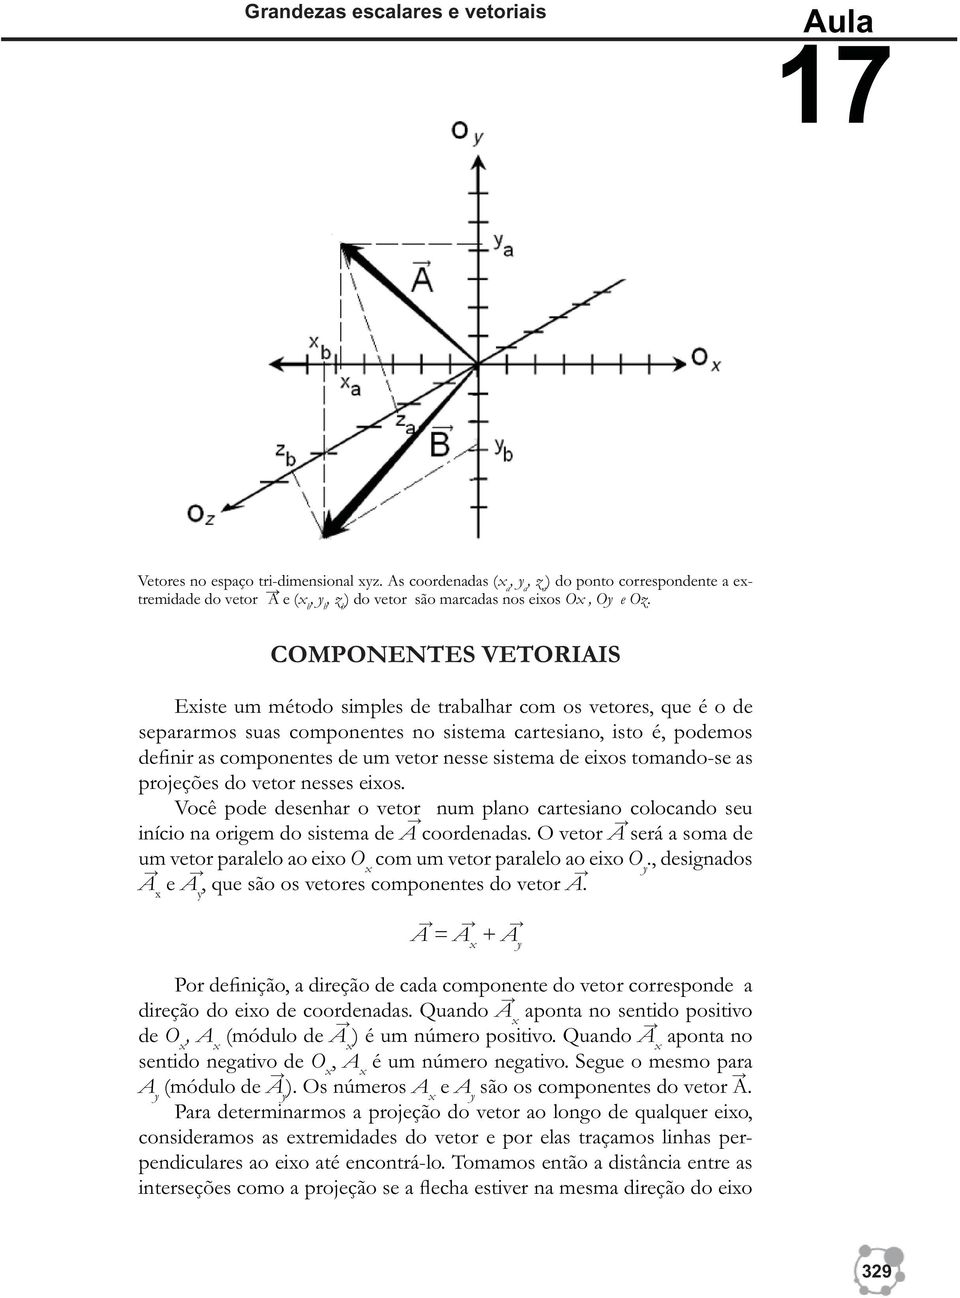 COMPONENTES VETORIAIS Existe um método simples de trabalhar com os vetores, que é o de separarmos suas componentes no sistema cartesiano, isto é, podemos definir as componentes de um vetor nesse